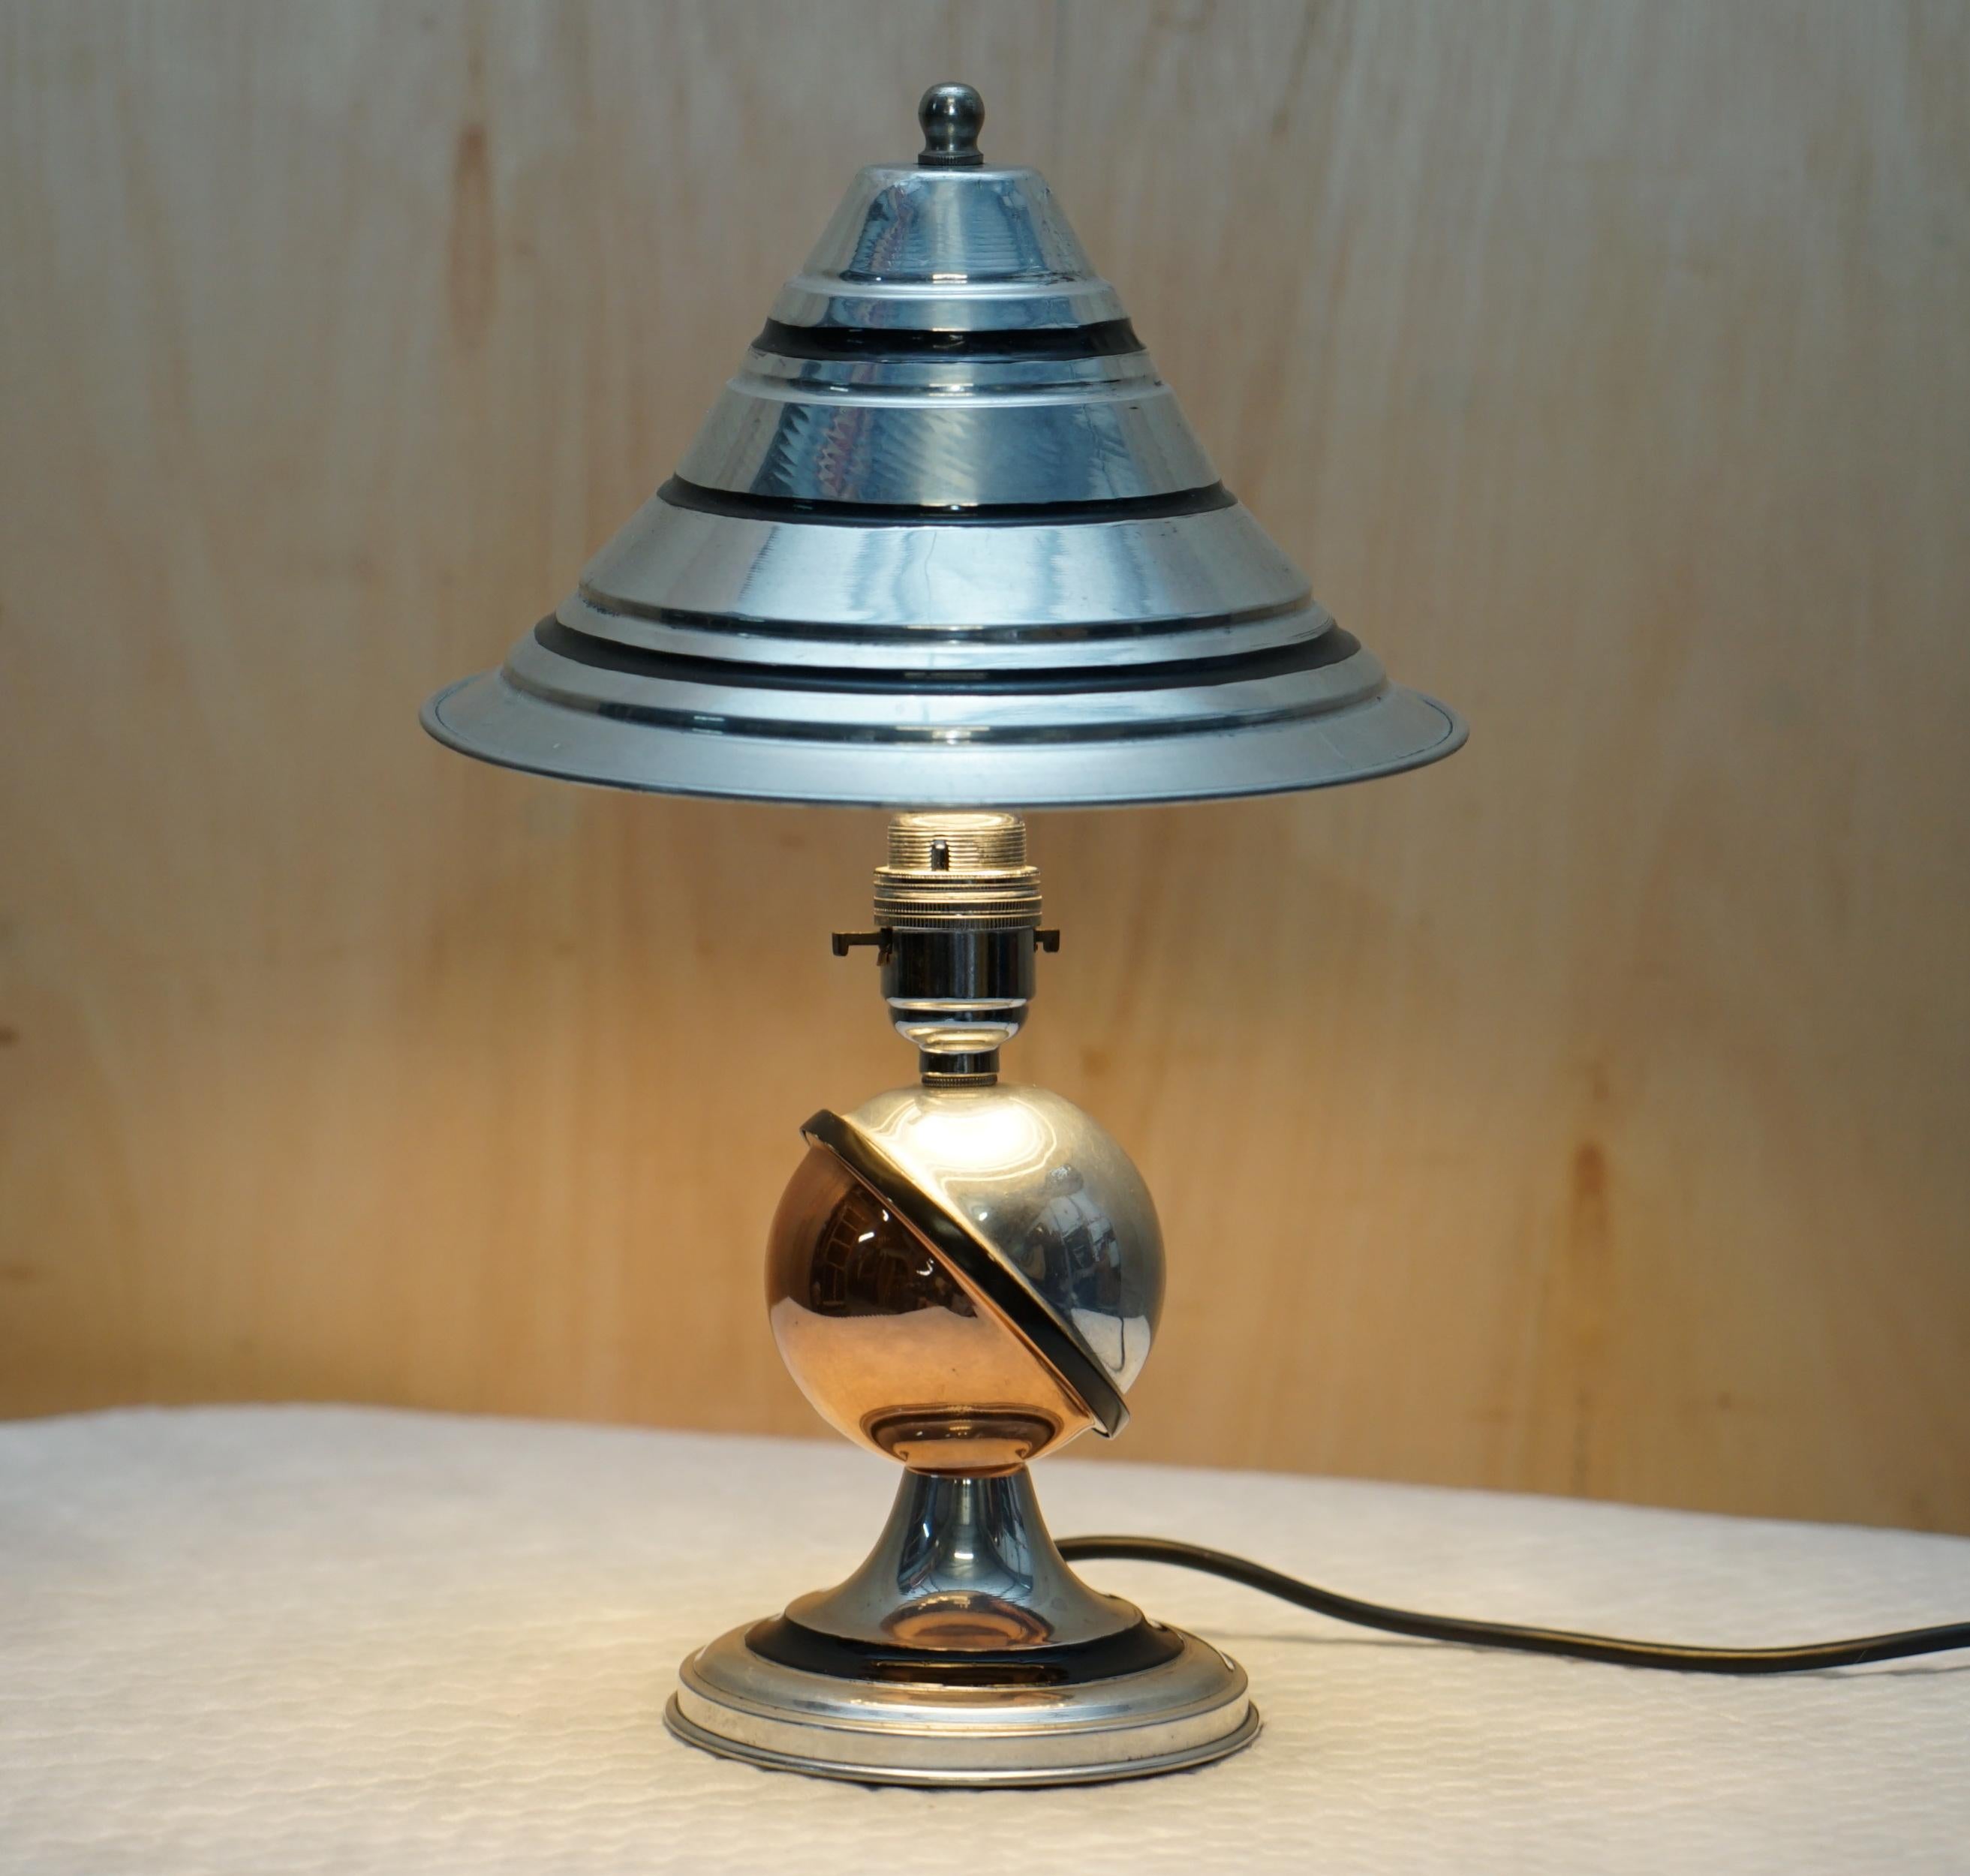 Wir freuen uns, Ihnen dieses wunderbare Paar kleiner Beistelltischlampen aus verchromtem Metall von Tucker & Edgar Ltd London, entworfen von Miss Elsie Roberts im Studio von Oswald Milne für das Claridges Hotel, ca. 1932, anbieten zu können.

Ein